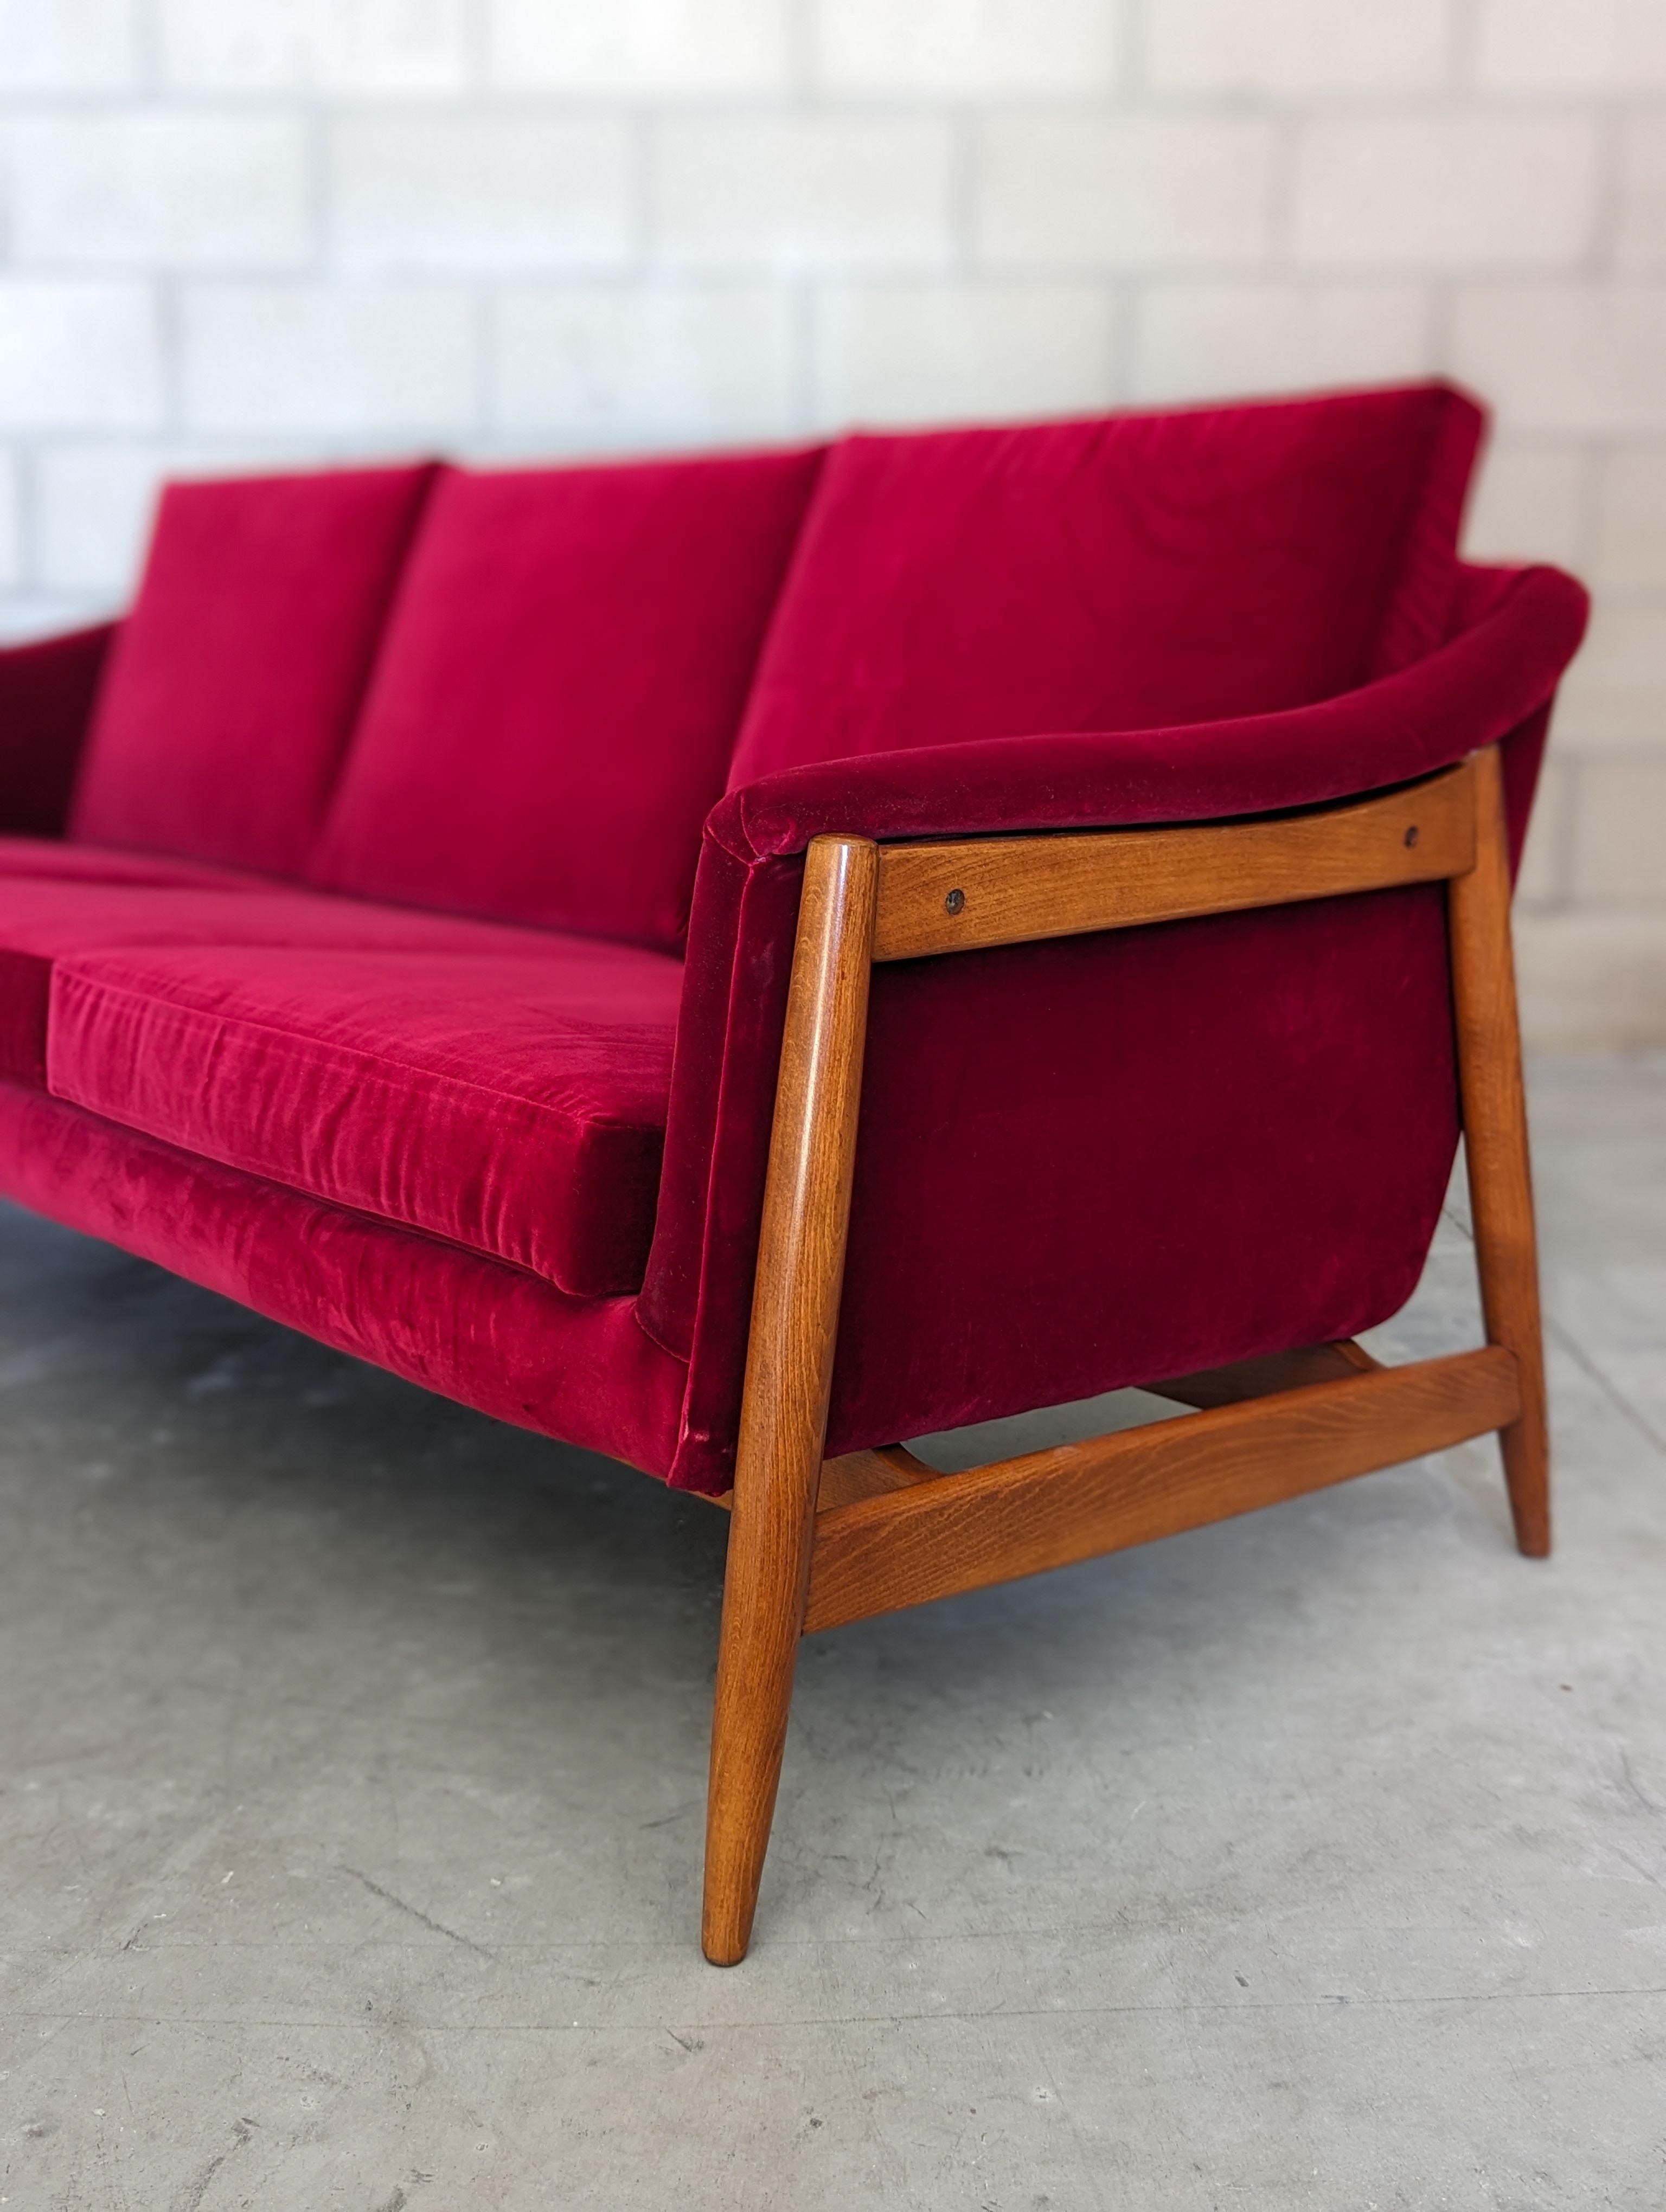 Mid Century Modern Sofa Designed by Folke Ohlsson for Dux of Sweden, c1960s 1